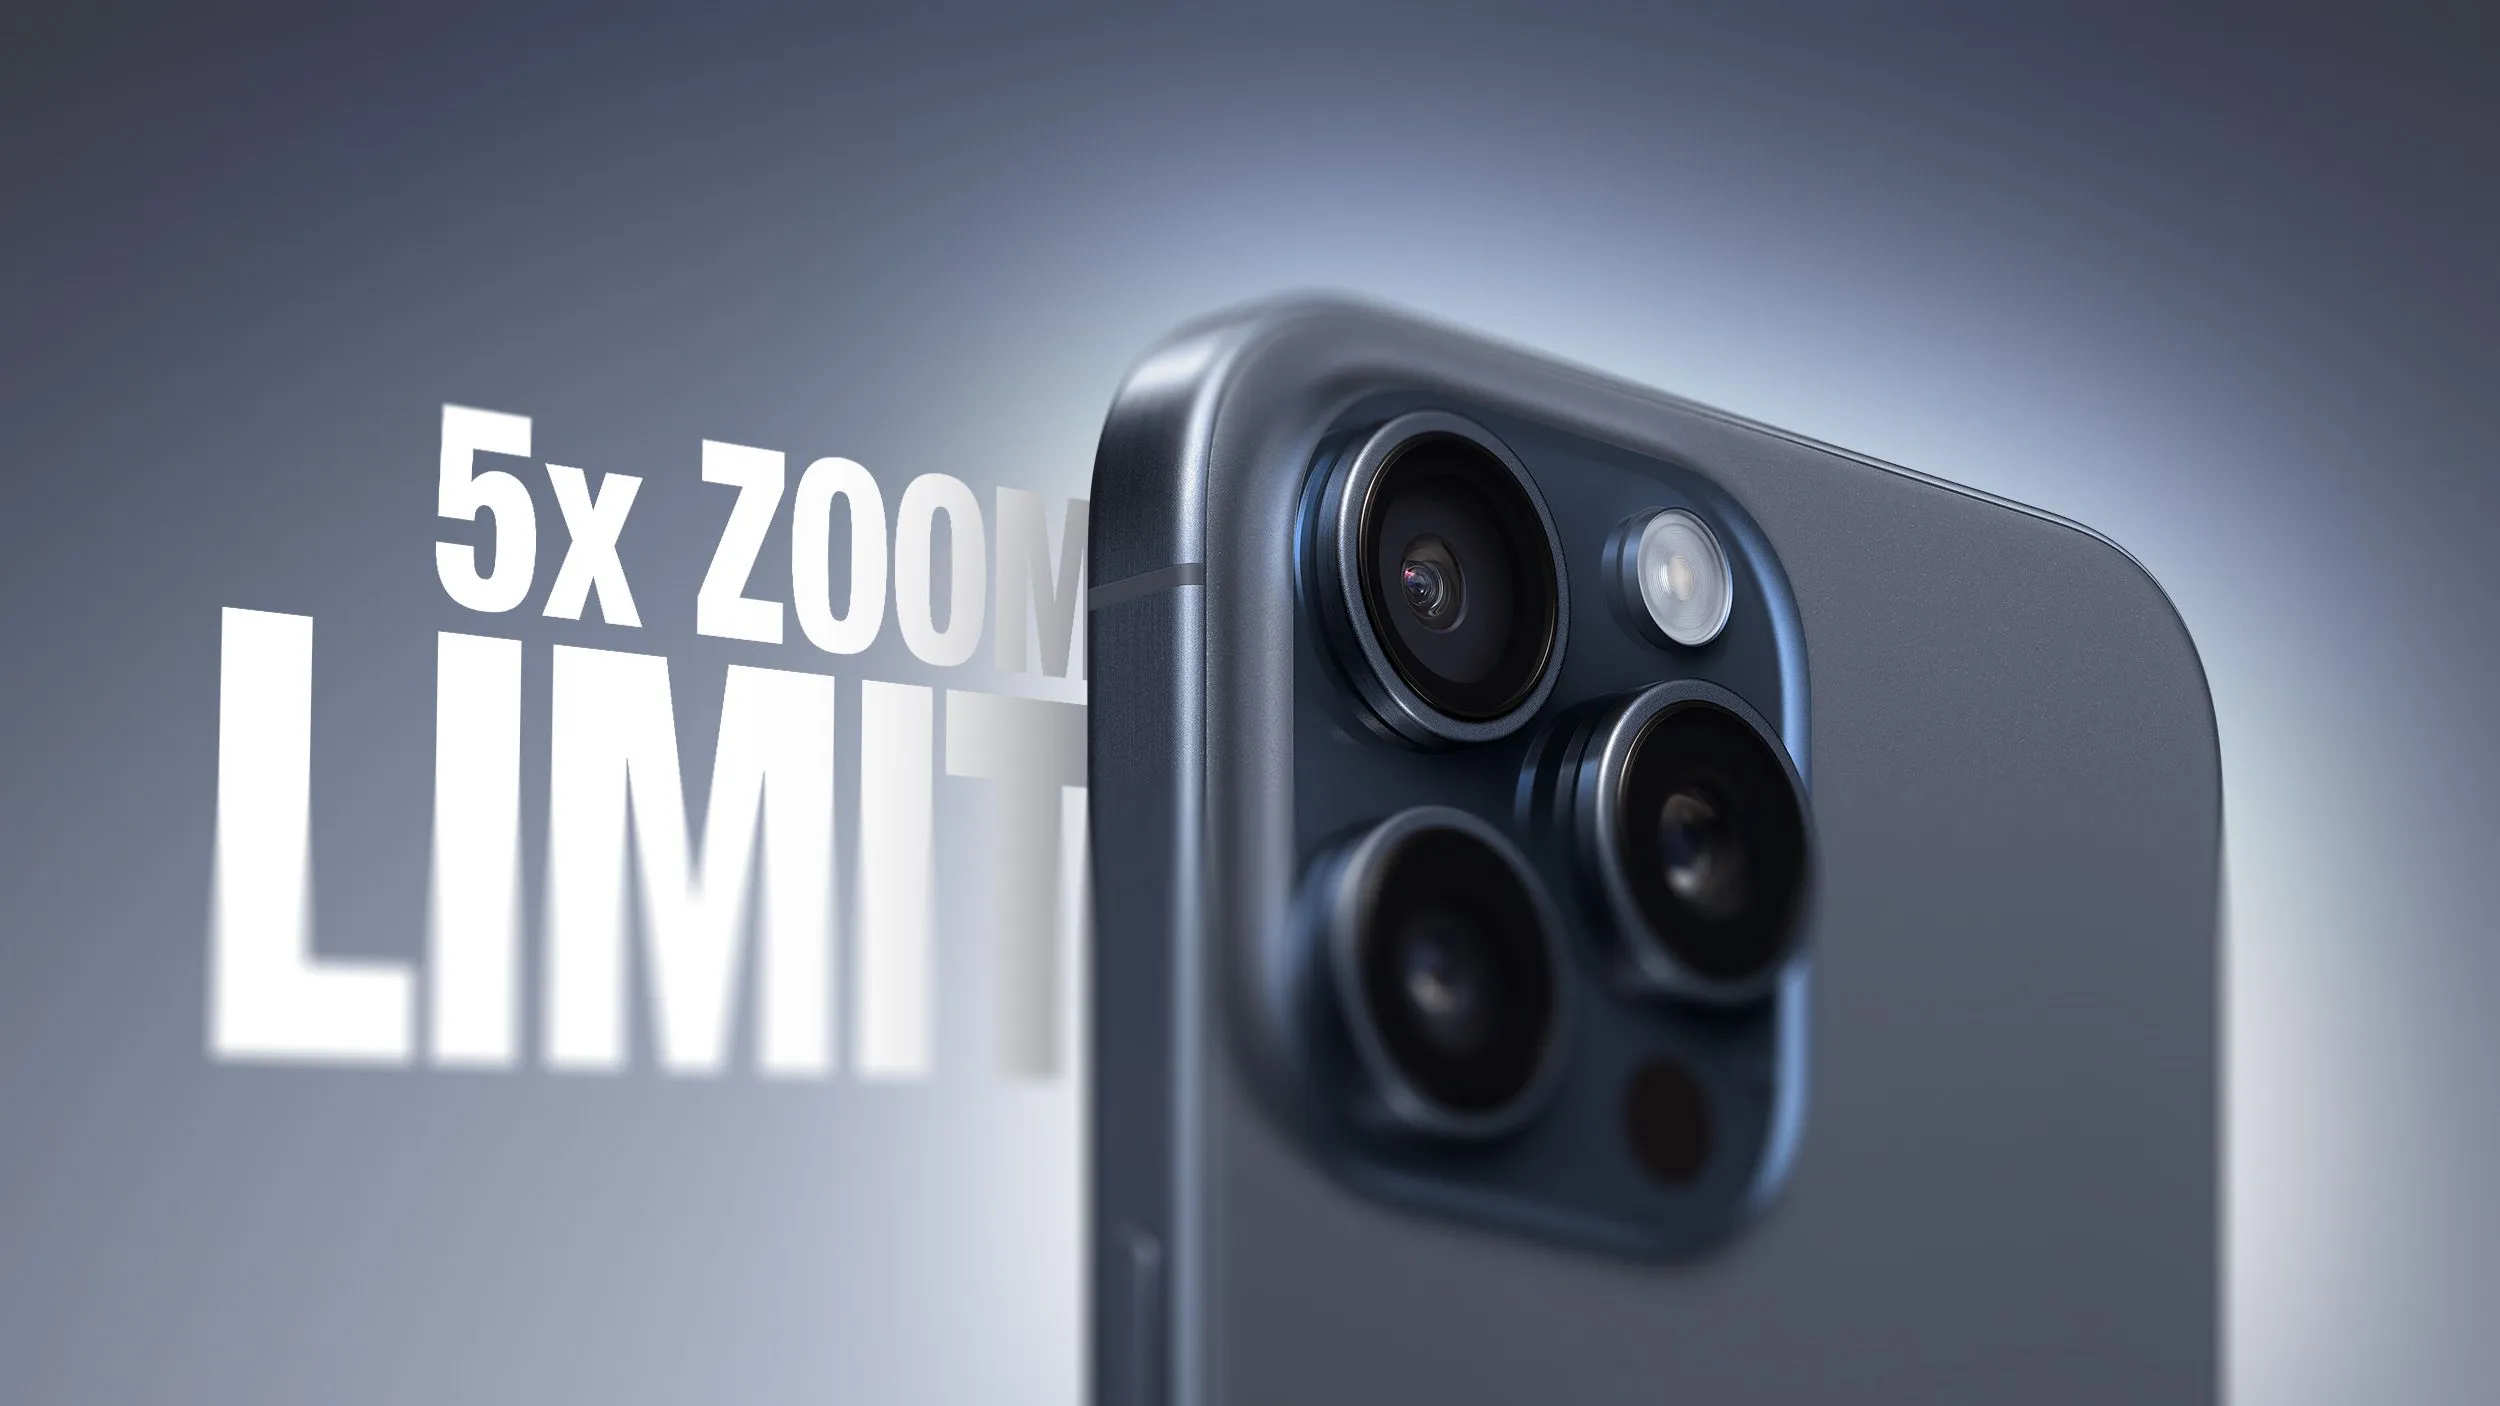 iPhone 16 Pro sẽ được trang bị camera tele thiết kế Tetraprism với zoom quang học 5x